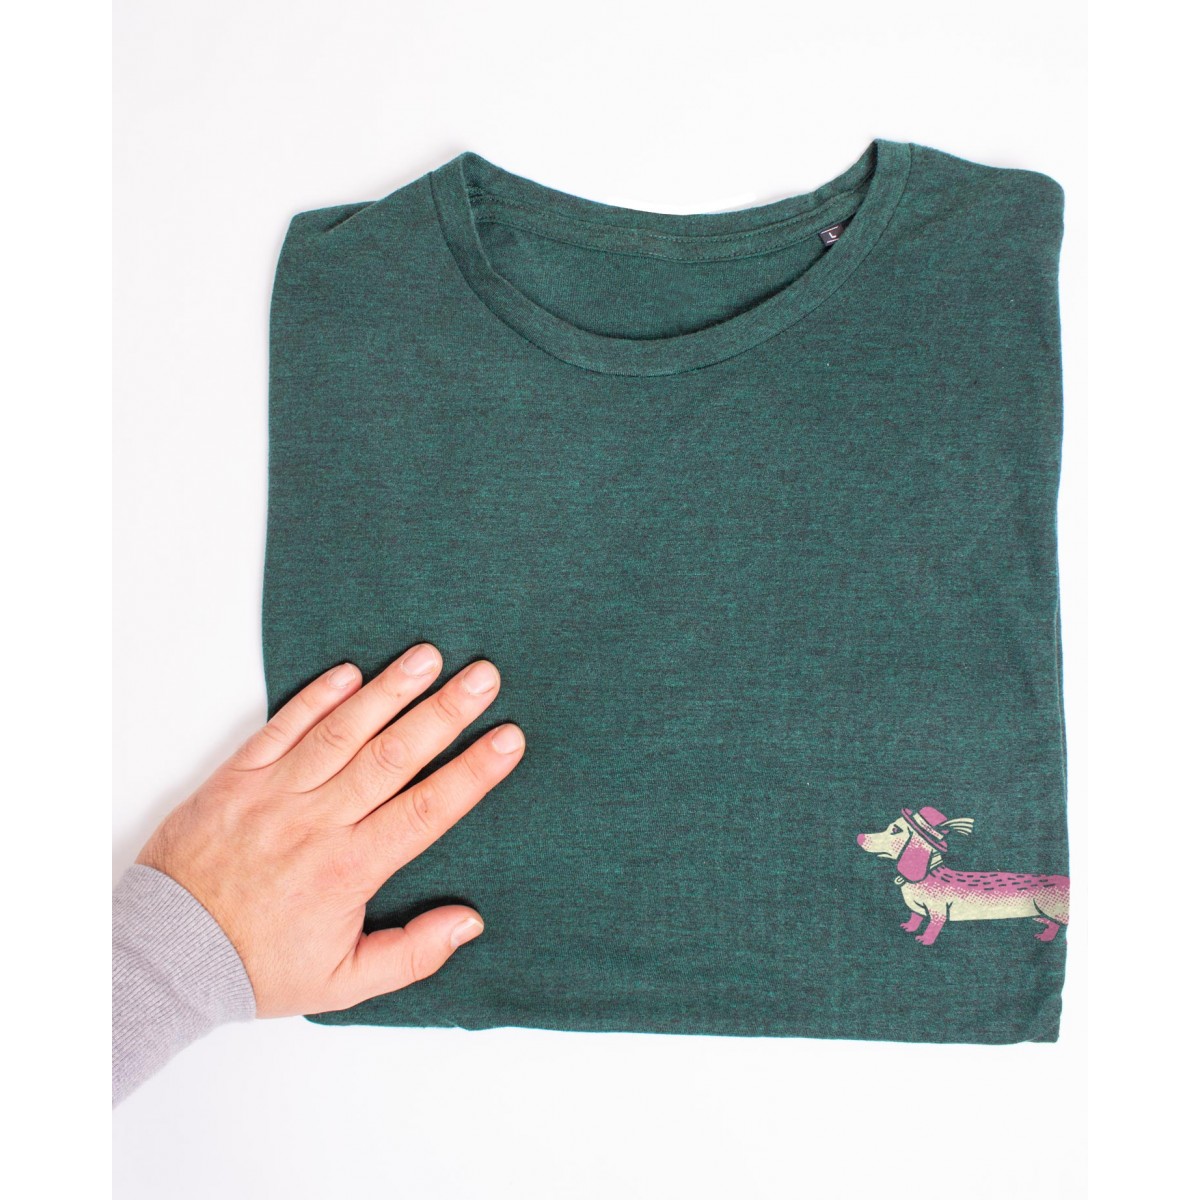 Martin Krusche - T-Shirt »Wiener Dog« Heatherforest